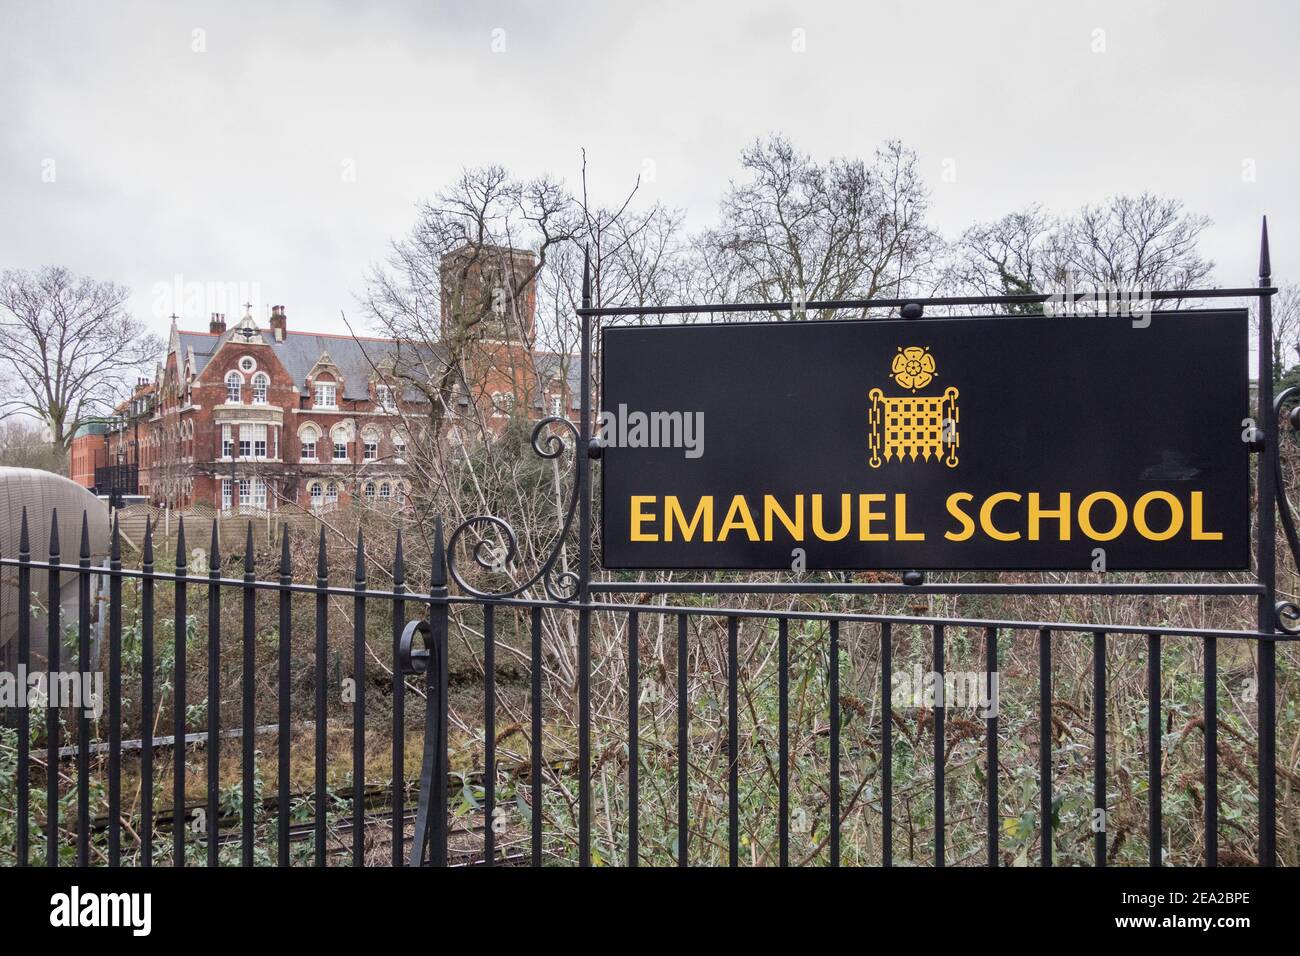 School signage outside Emanuel School, Battersea Rise, London, SW11, U.K. Stock Photo